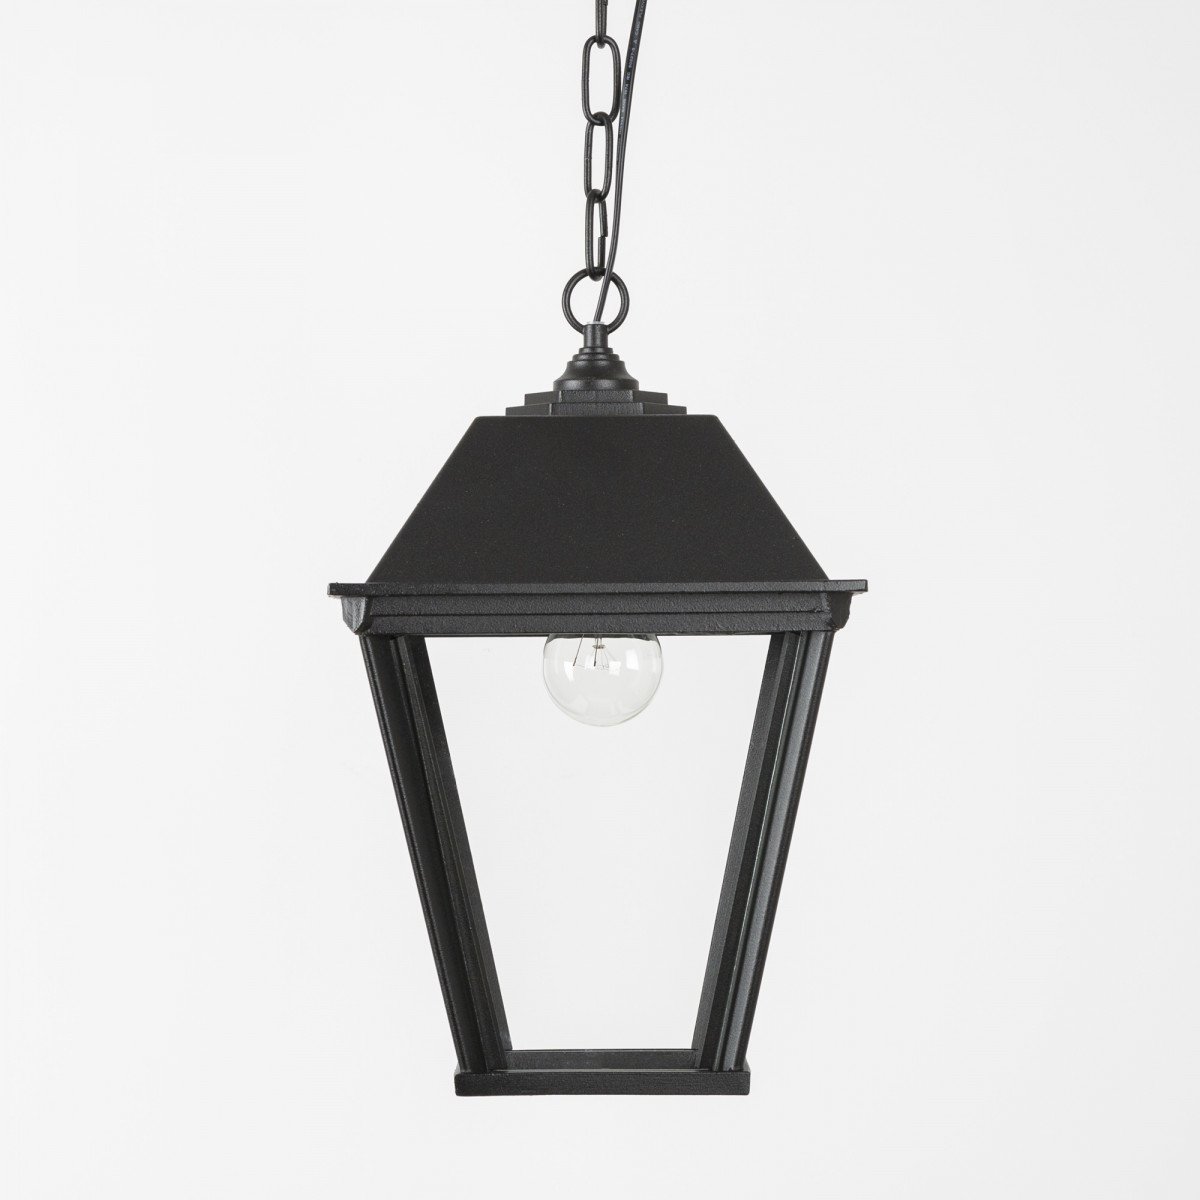 Lampe d'extérieur suspendue à chaîne Delft L lanterne carrée de KS Lichting, fabriquée aux Pays-Bas